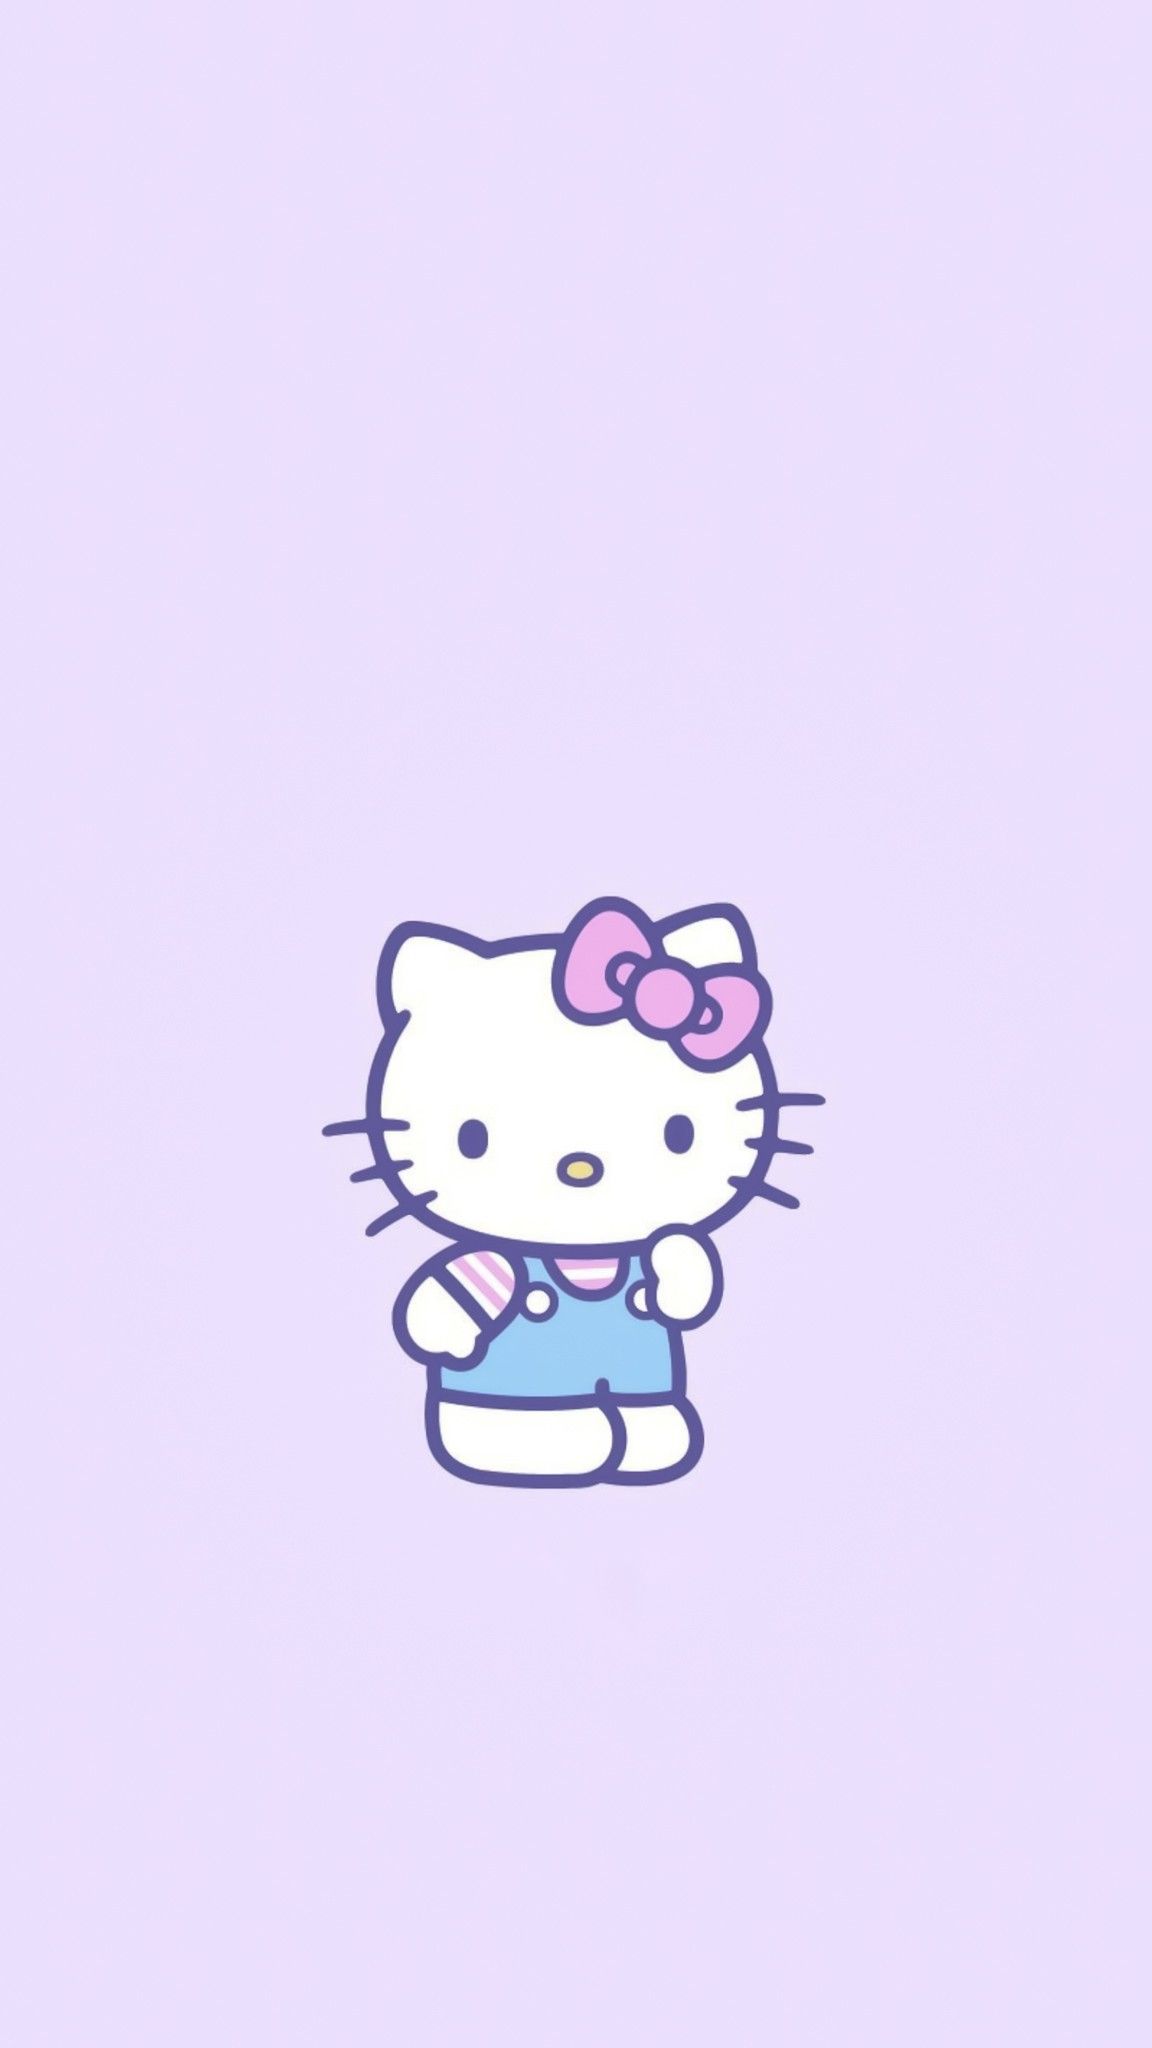 Bạn là fan của Hello Kitty? Hãy thể hiện đam mê của mình với Hình nền Hello Kitty nền trắng xinh xắn trên điện thoại. Cùng xem ngay bức ảnh liên quan đến từ khóa Hello Kitty BG để trang trí cho mình một giao diện mới.